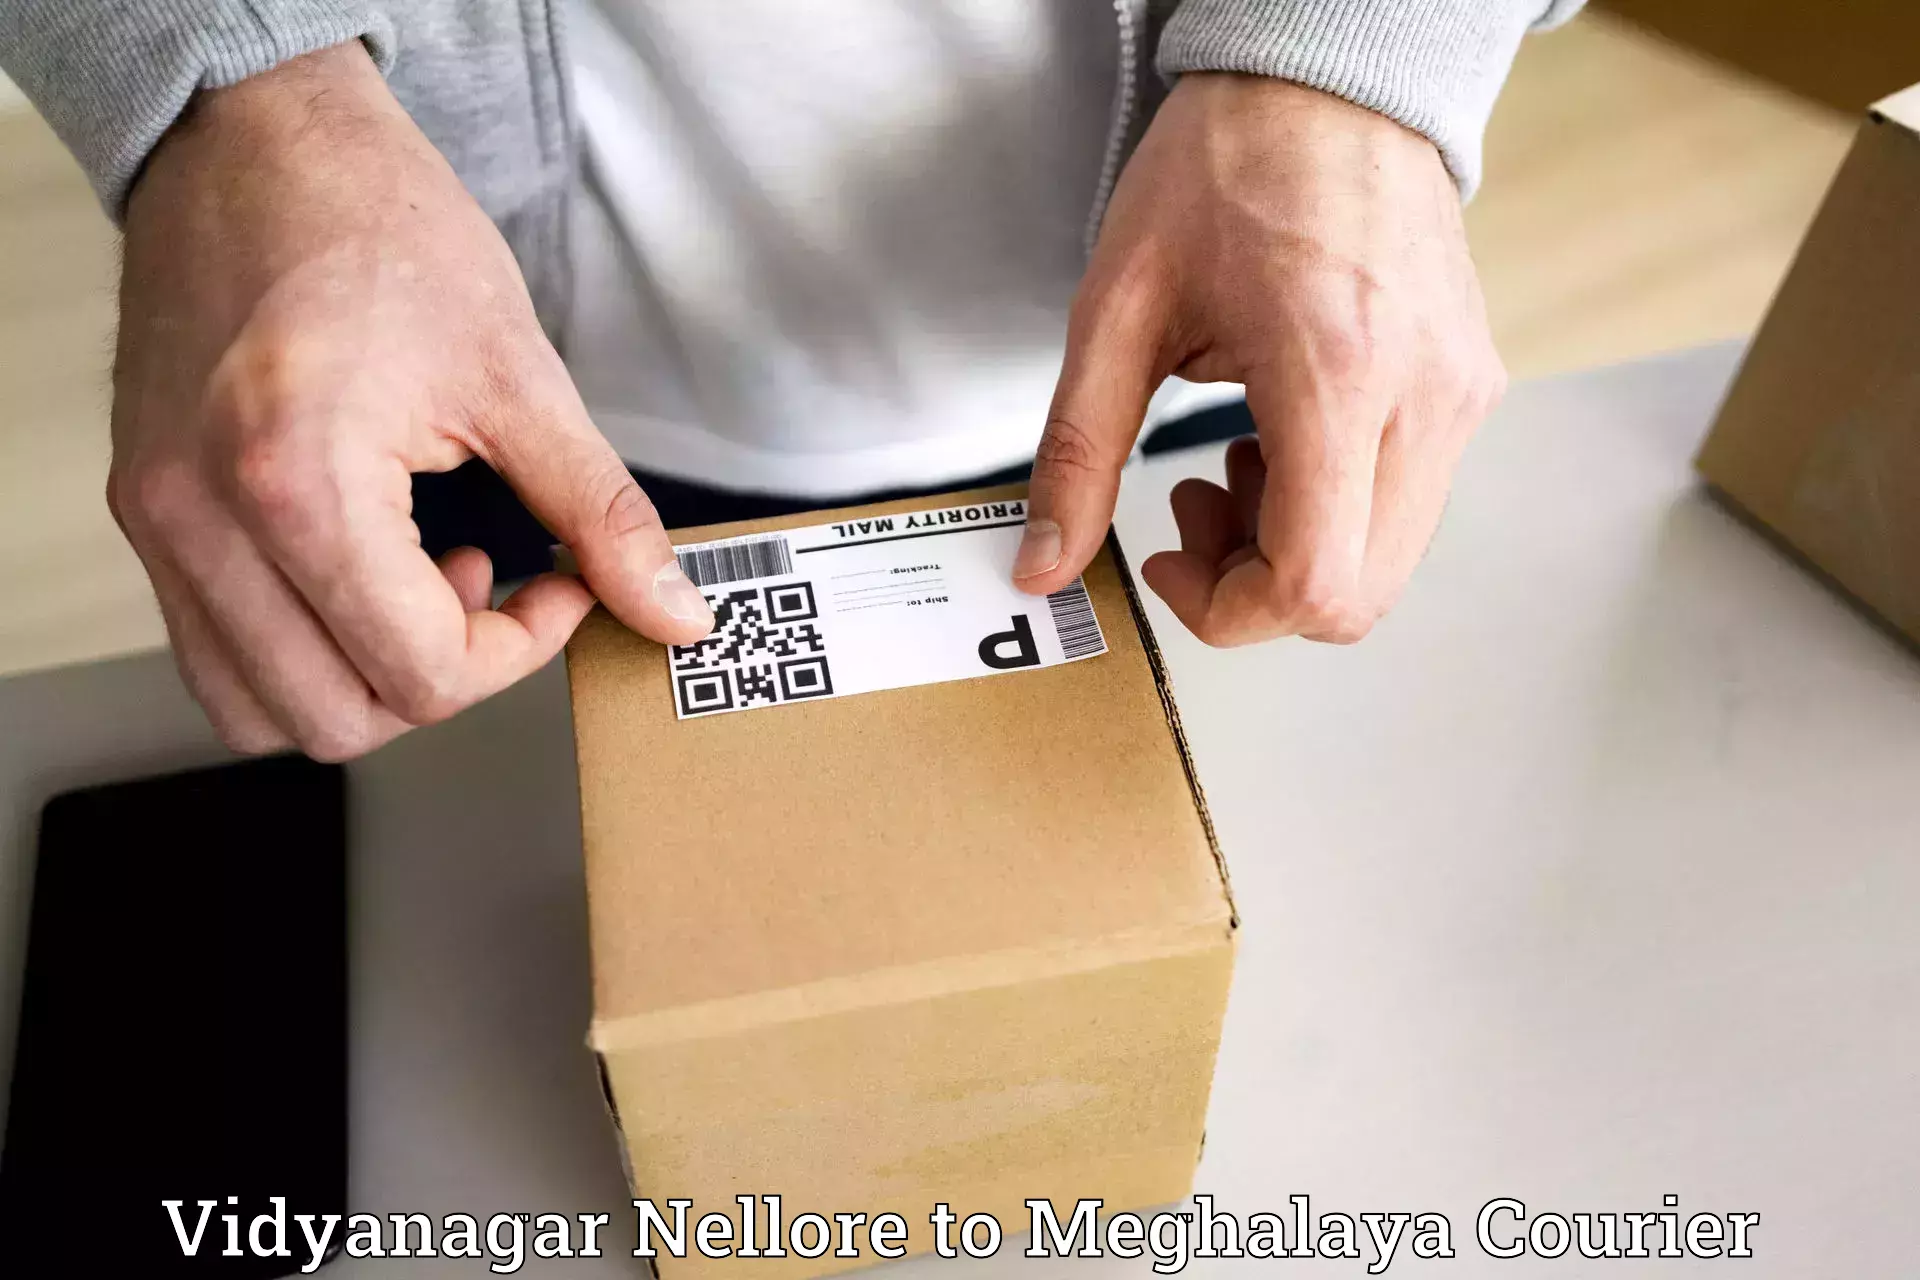 Reliable logistics providers Vidyanagar Nellore to Nongpoh